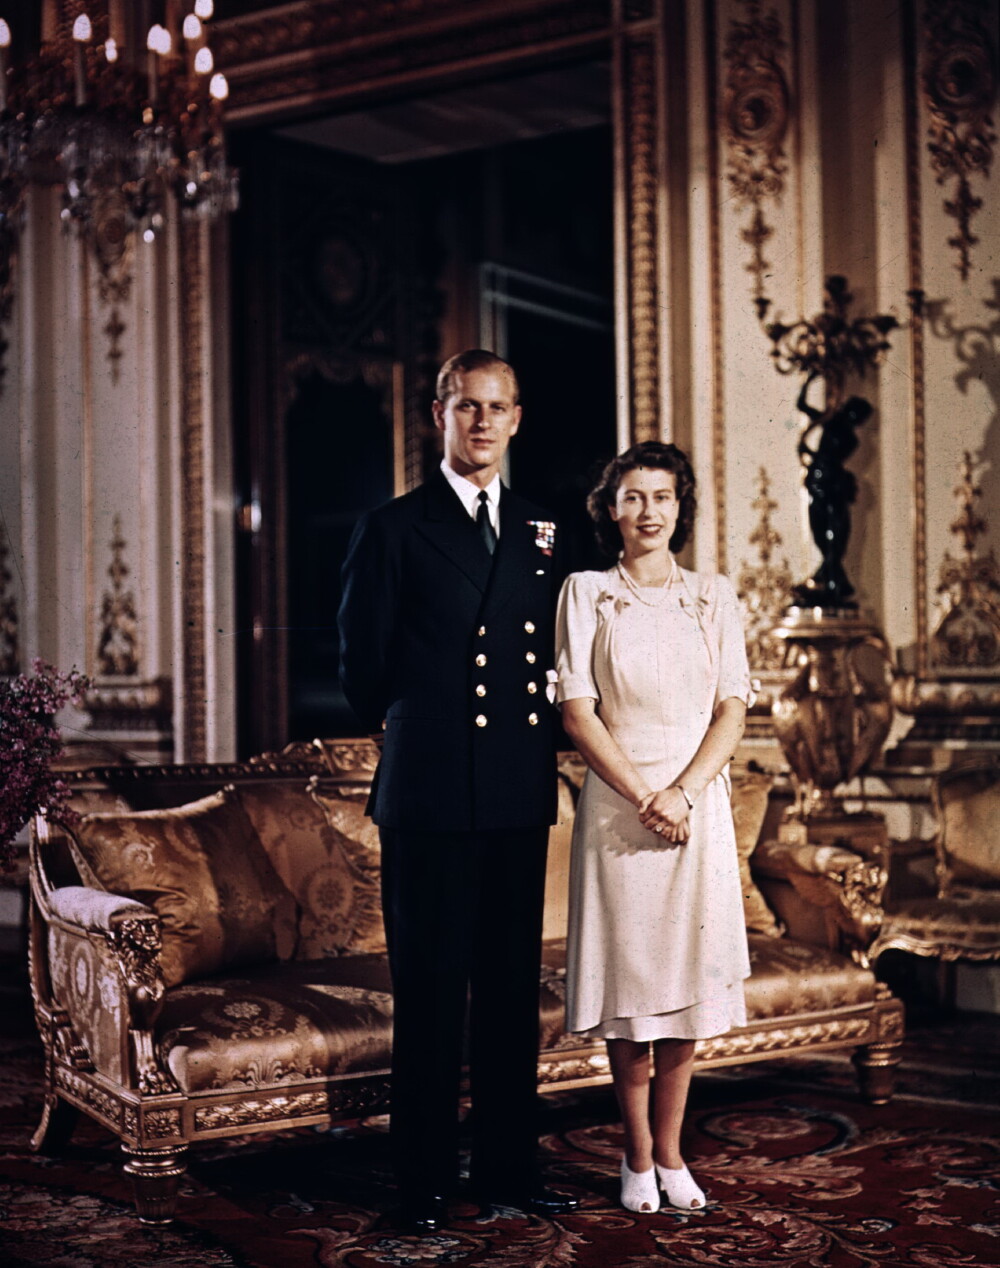 Documentar Channel 5: Printul Philip i-ar fi fost infidel sotiei sale, Regina Elisabeta a II-a, in tinerete - Imaginea 3